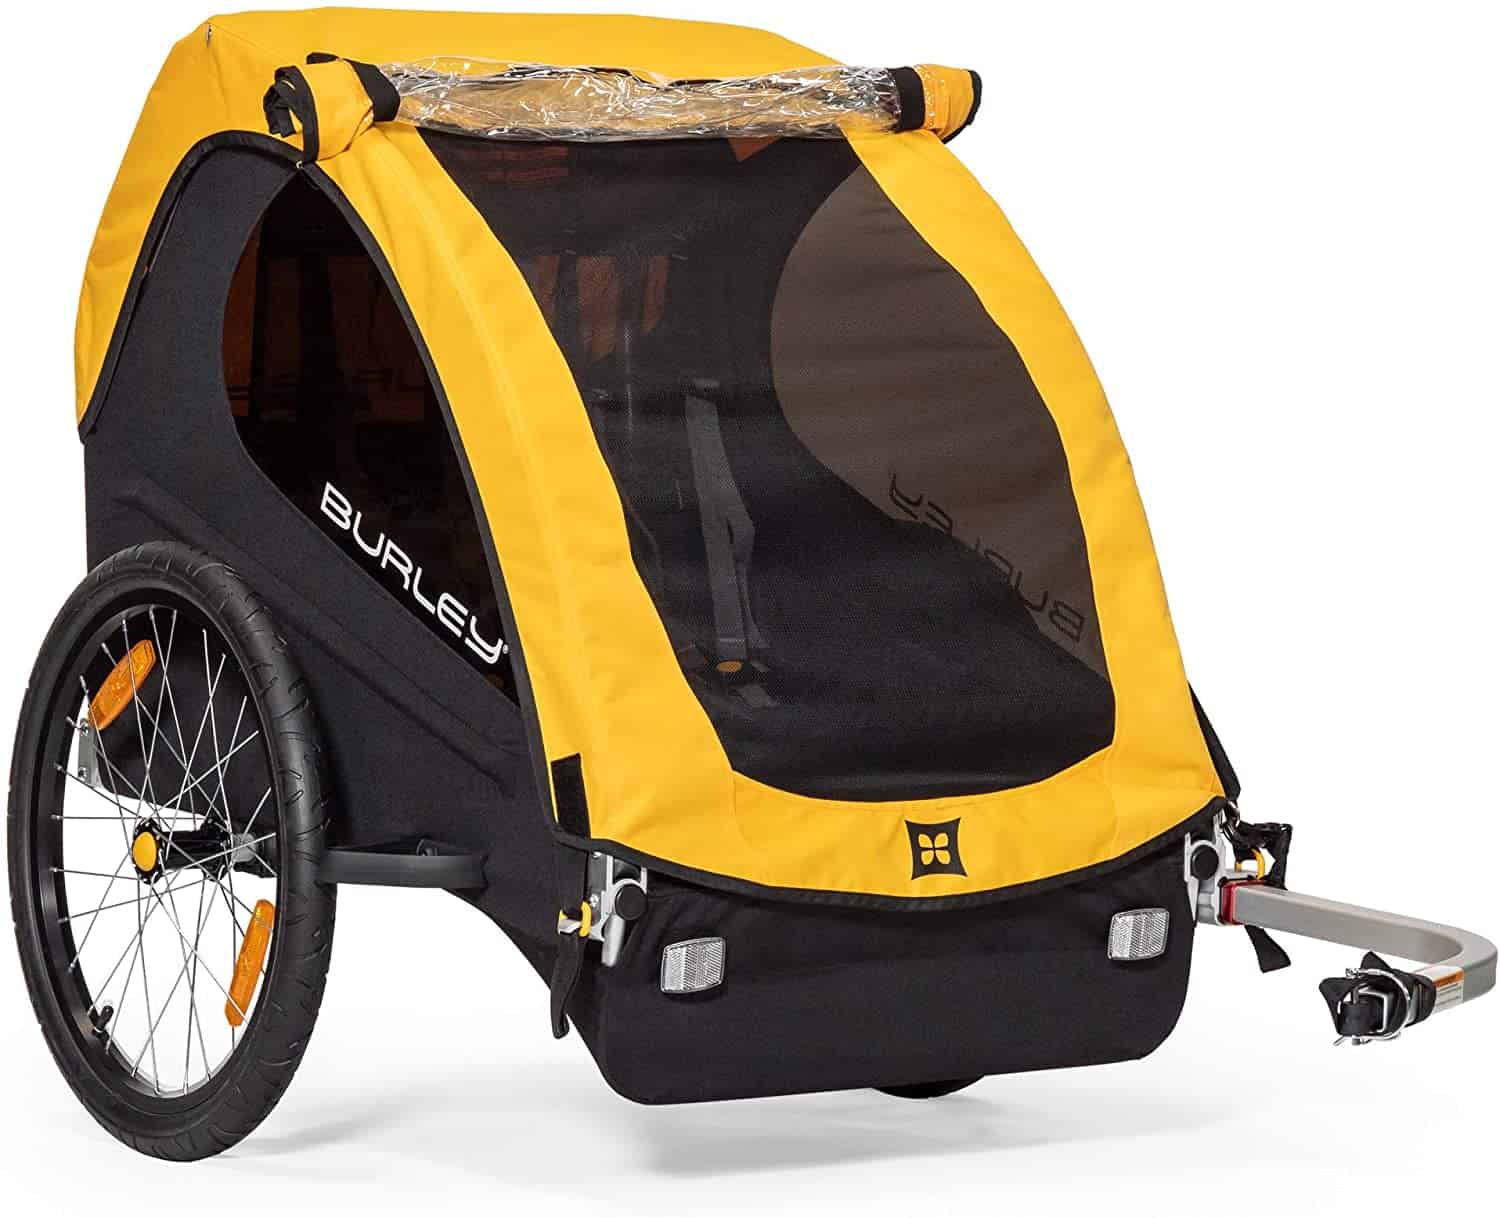 Handigste fietskar om kinderen mee te vervoeren Burley Bee fietskar aanhanger